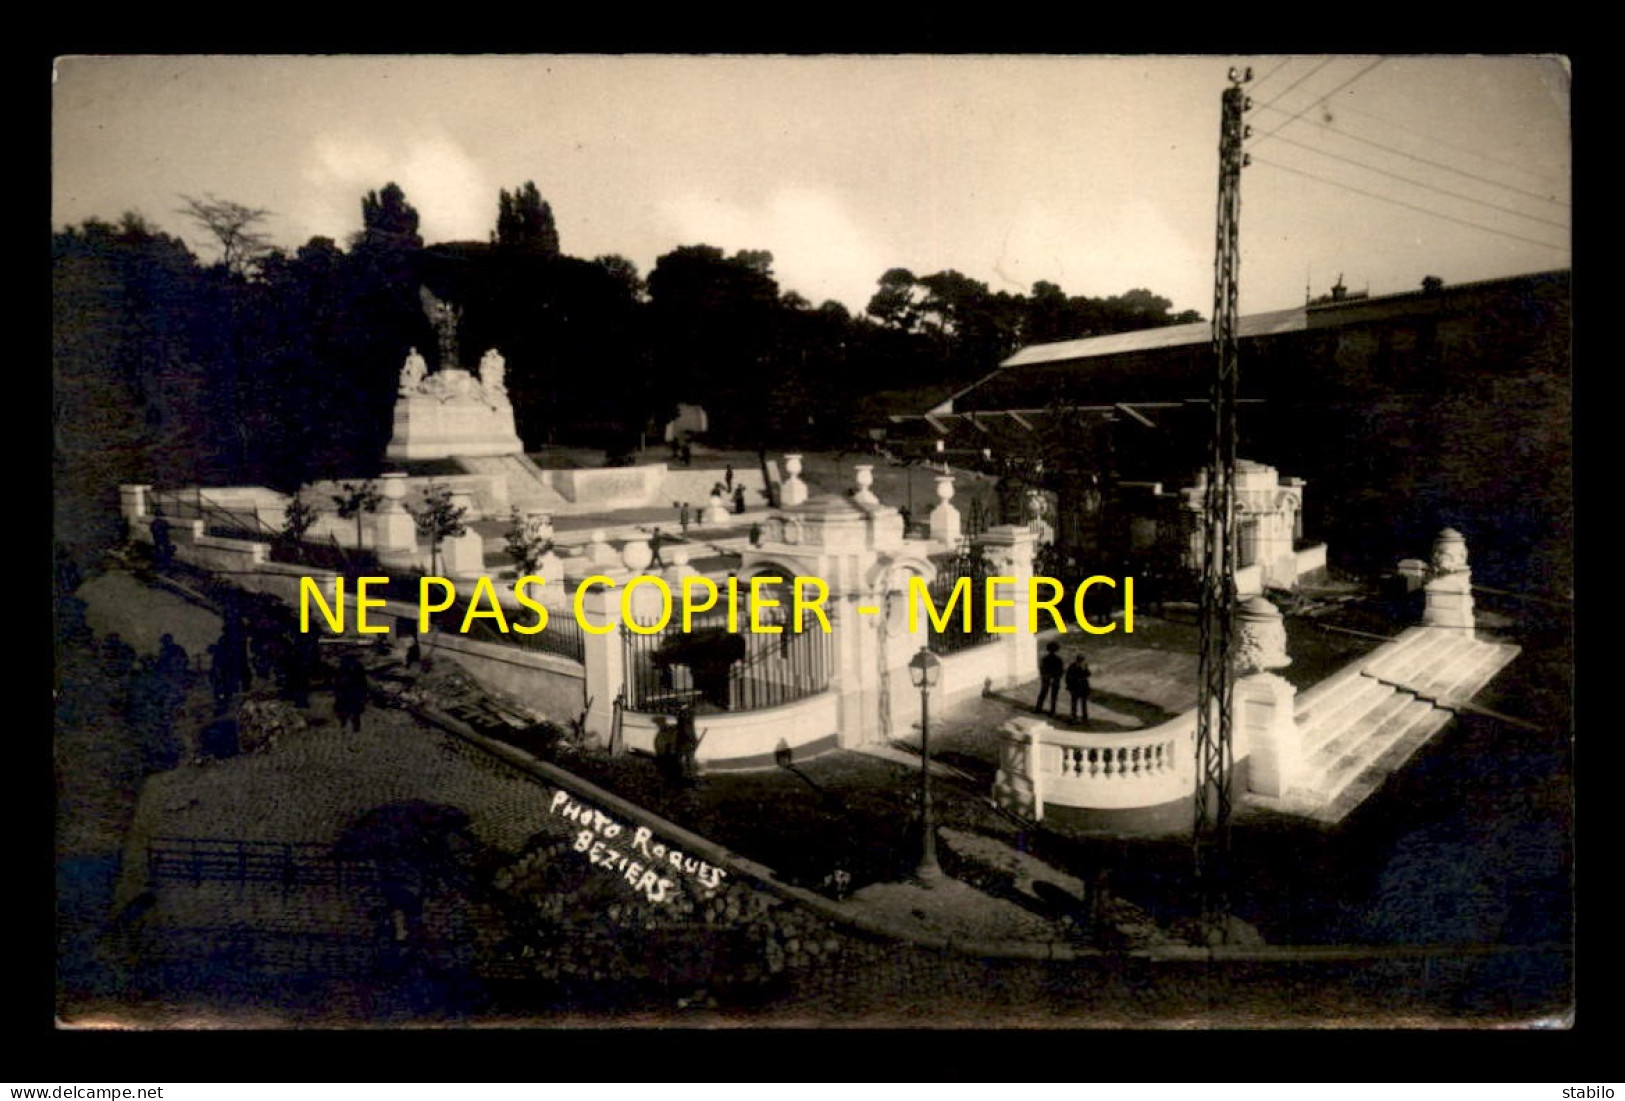 34 - BEZIERS - LE MONUMENT AUX MORTS - VUE GENERALE - PHOTO ROQUES - CARTE PHOTO ORIGINALE - Beziers